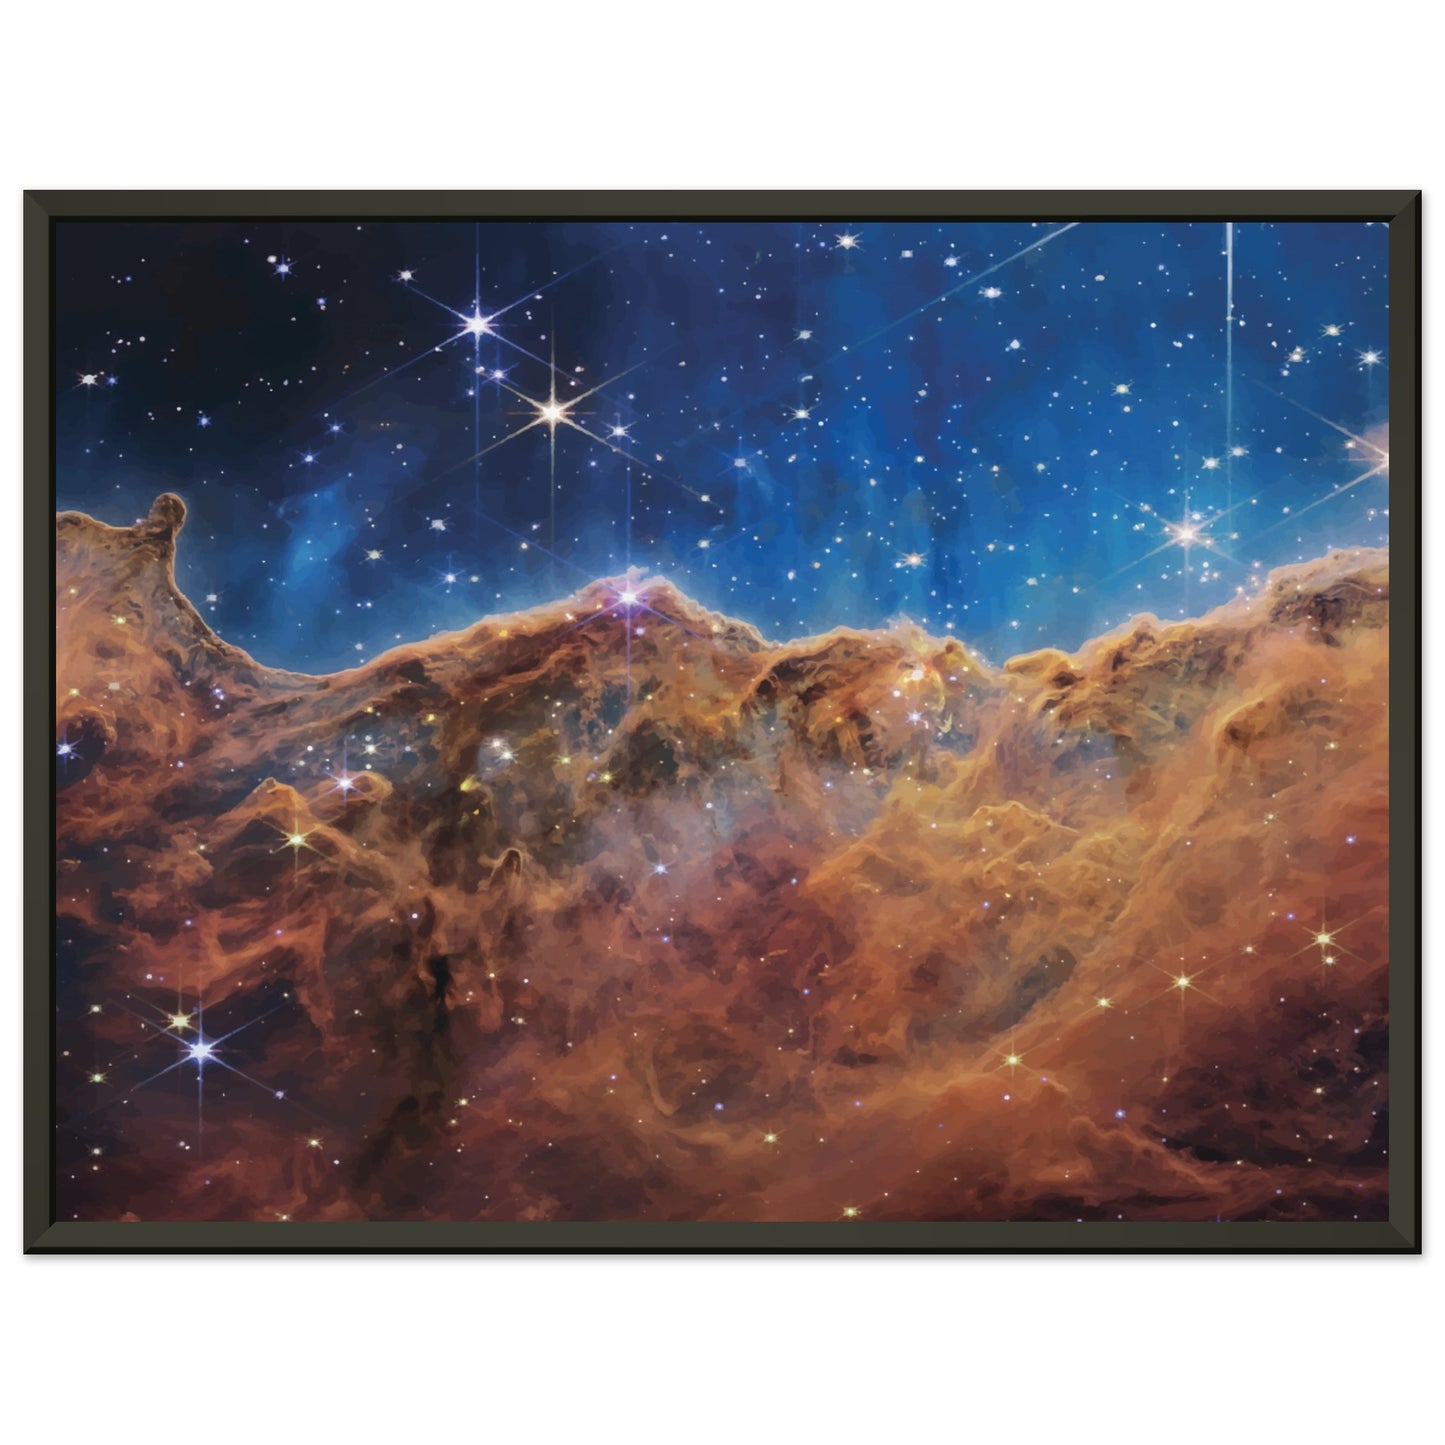 Cosmic Cliffs in the Carina Nebula